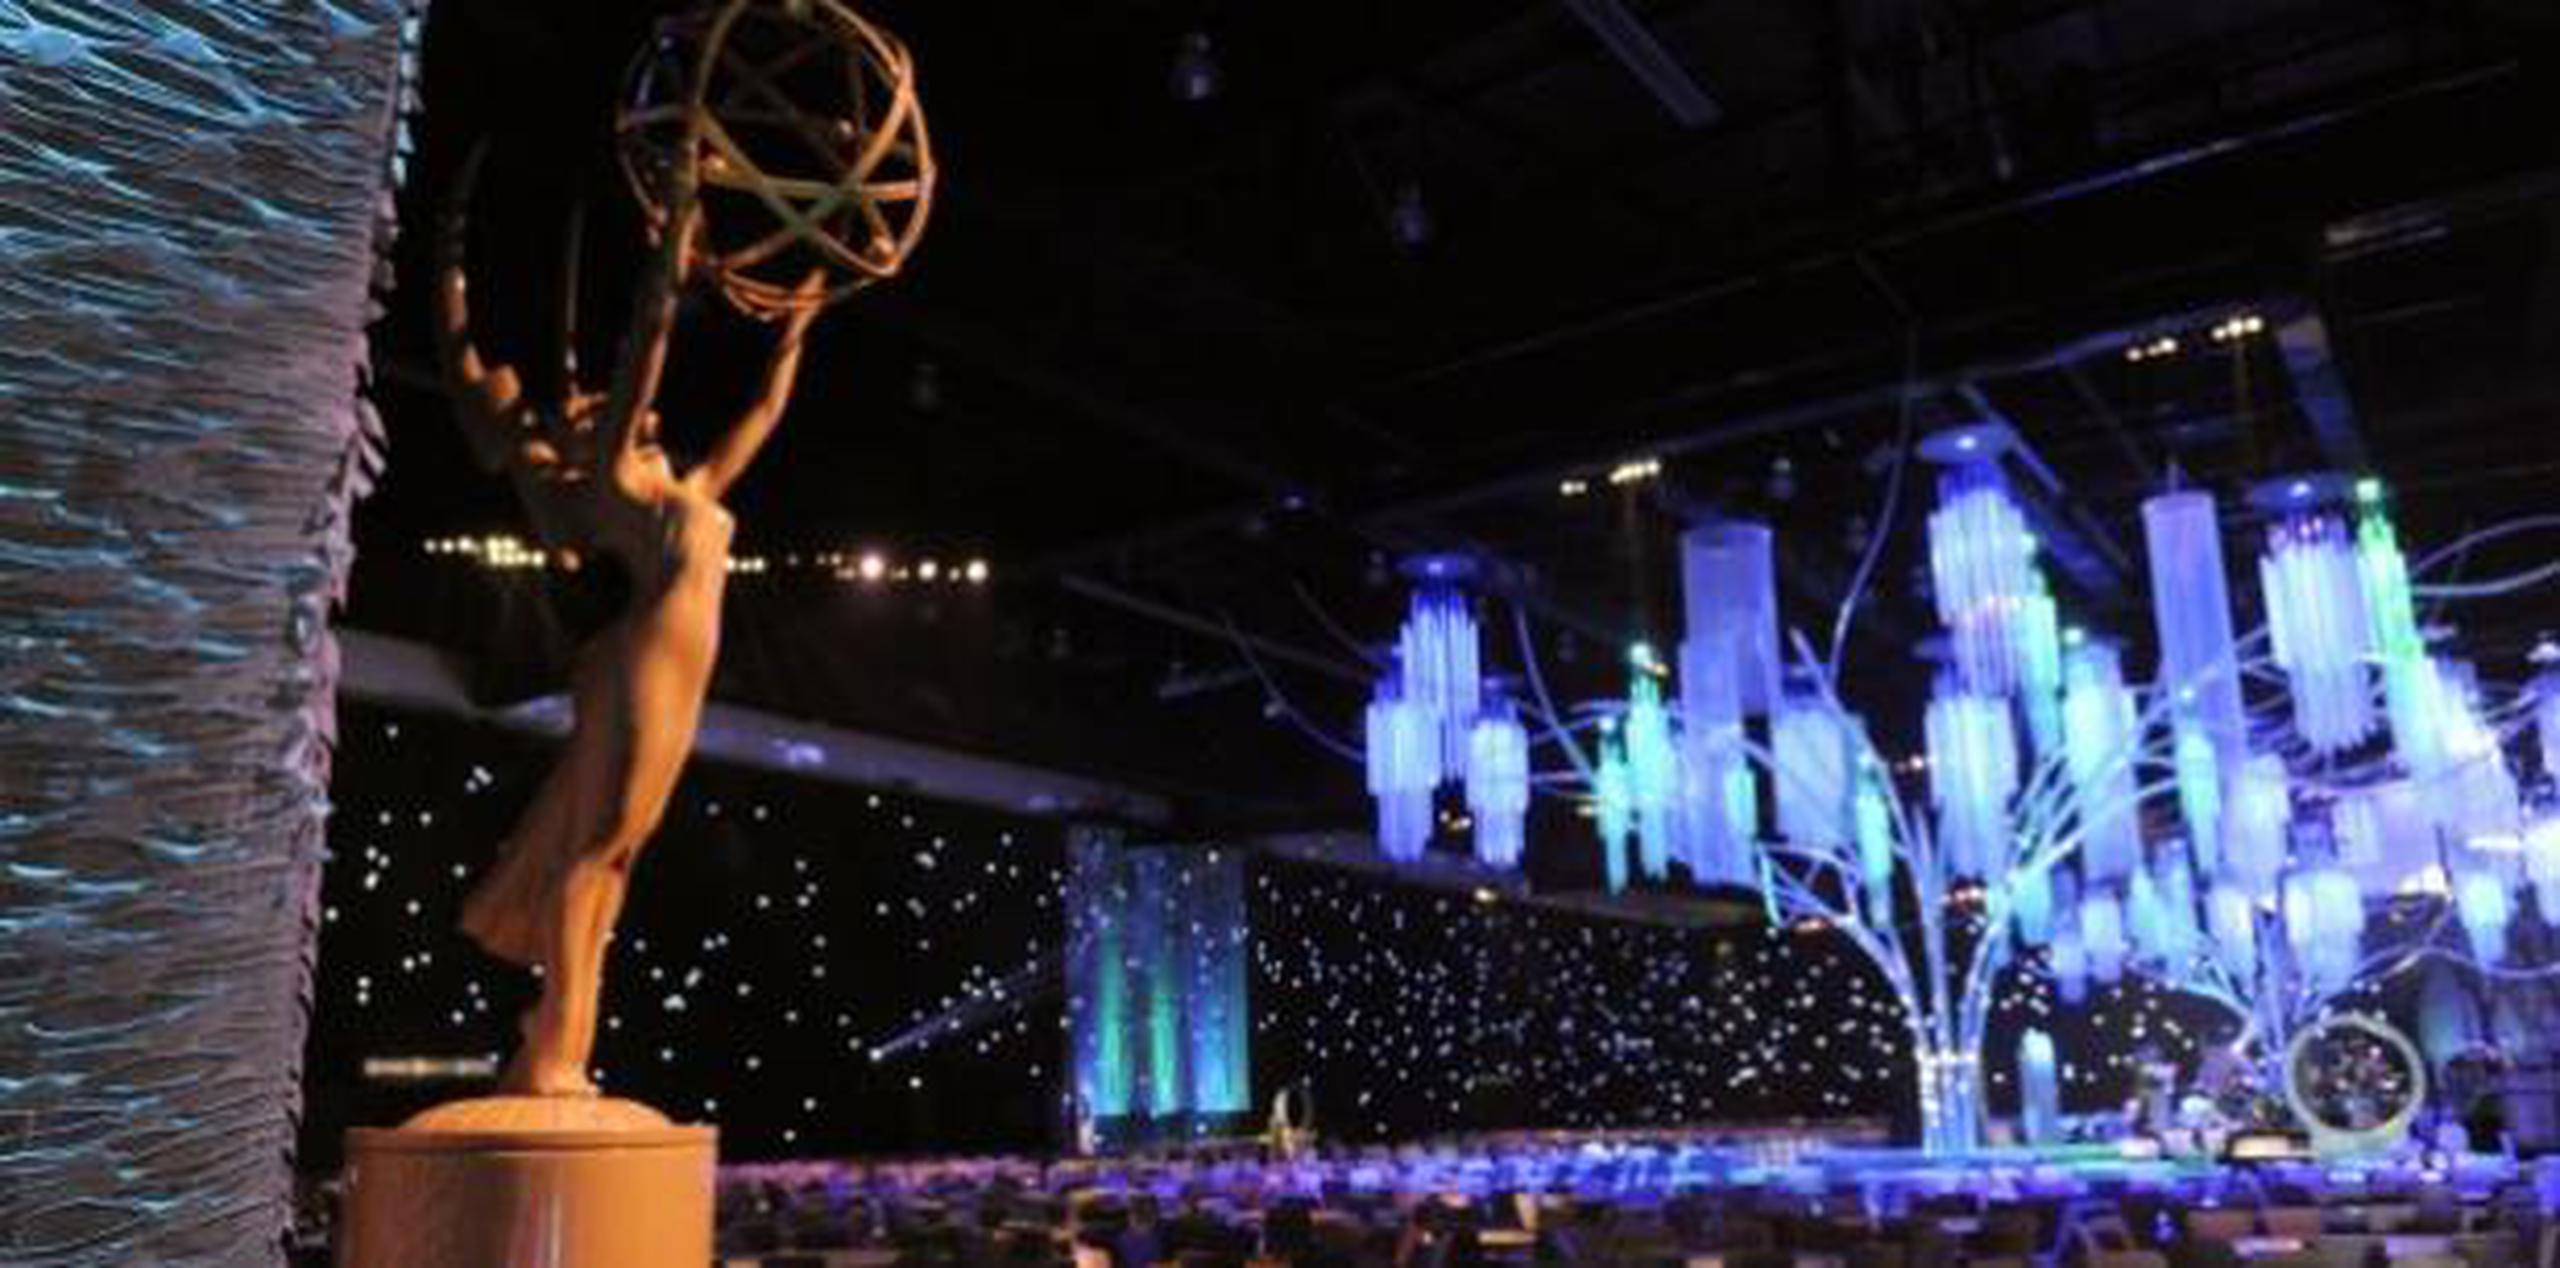 Los premios Emmy tendrán lugar el 22 de septiembre en el Teatro Microsoft de Los Ángeles. (AP)